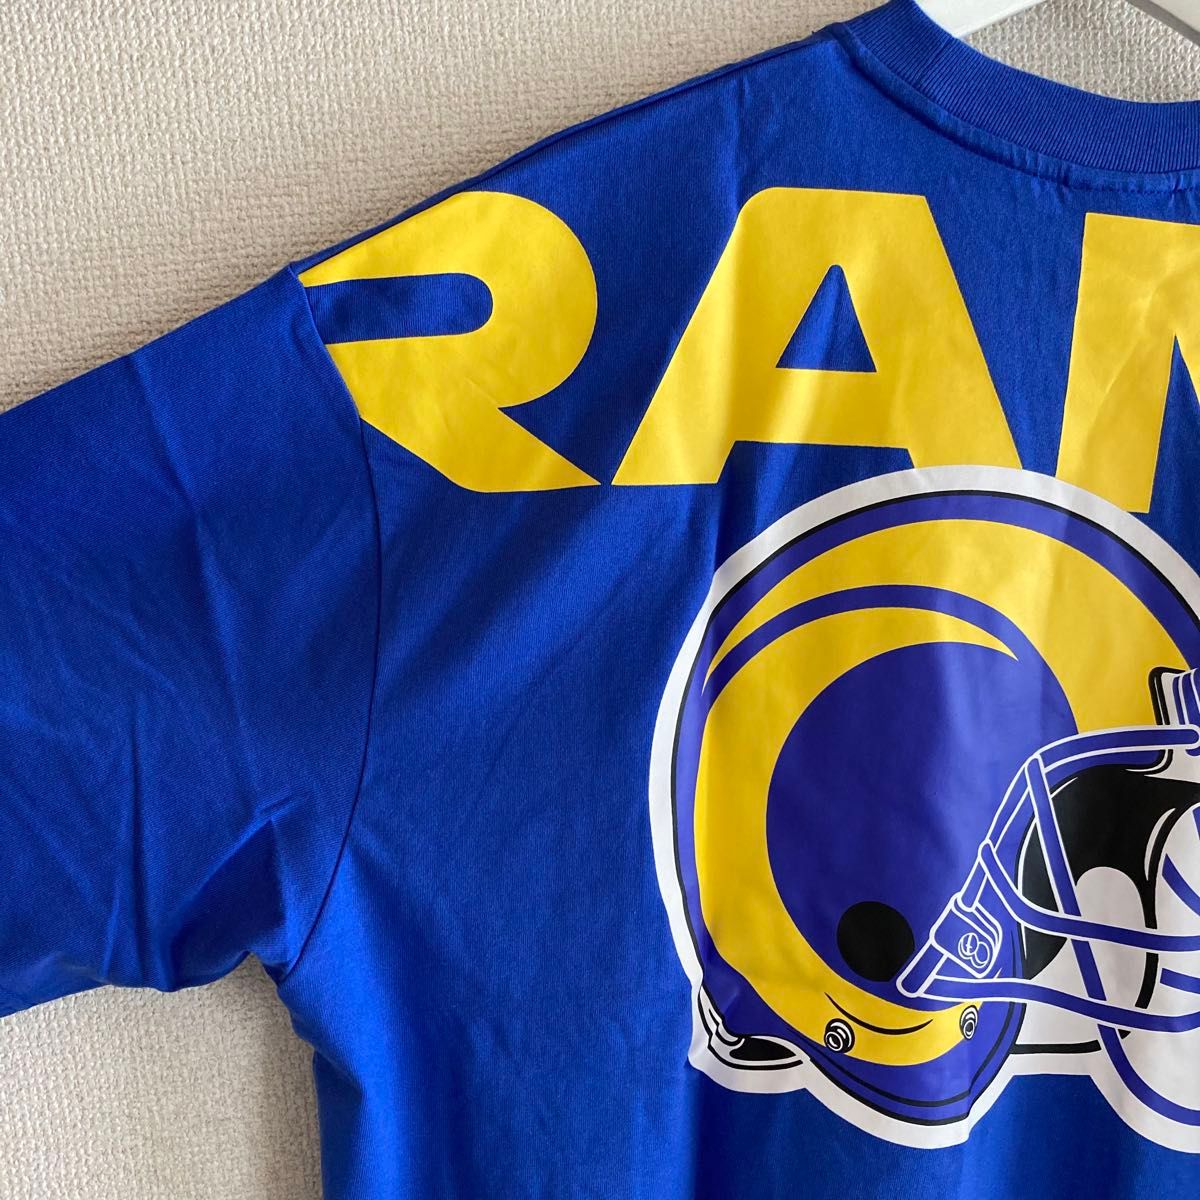 【US限定】ニューエラ NFL ロサンゼルスラムズ オーバーサイズロゴTシャツ new era Los Angeles Rams